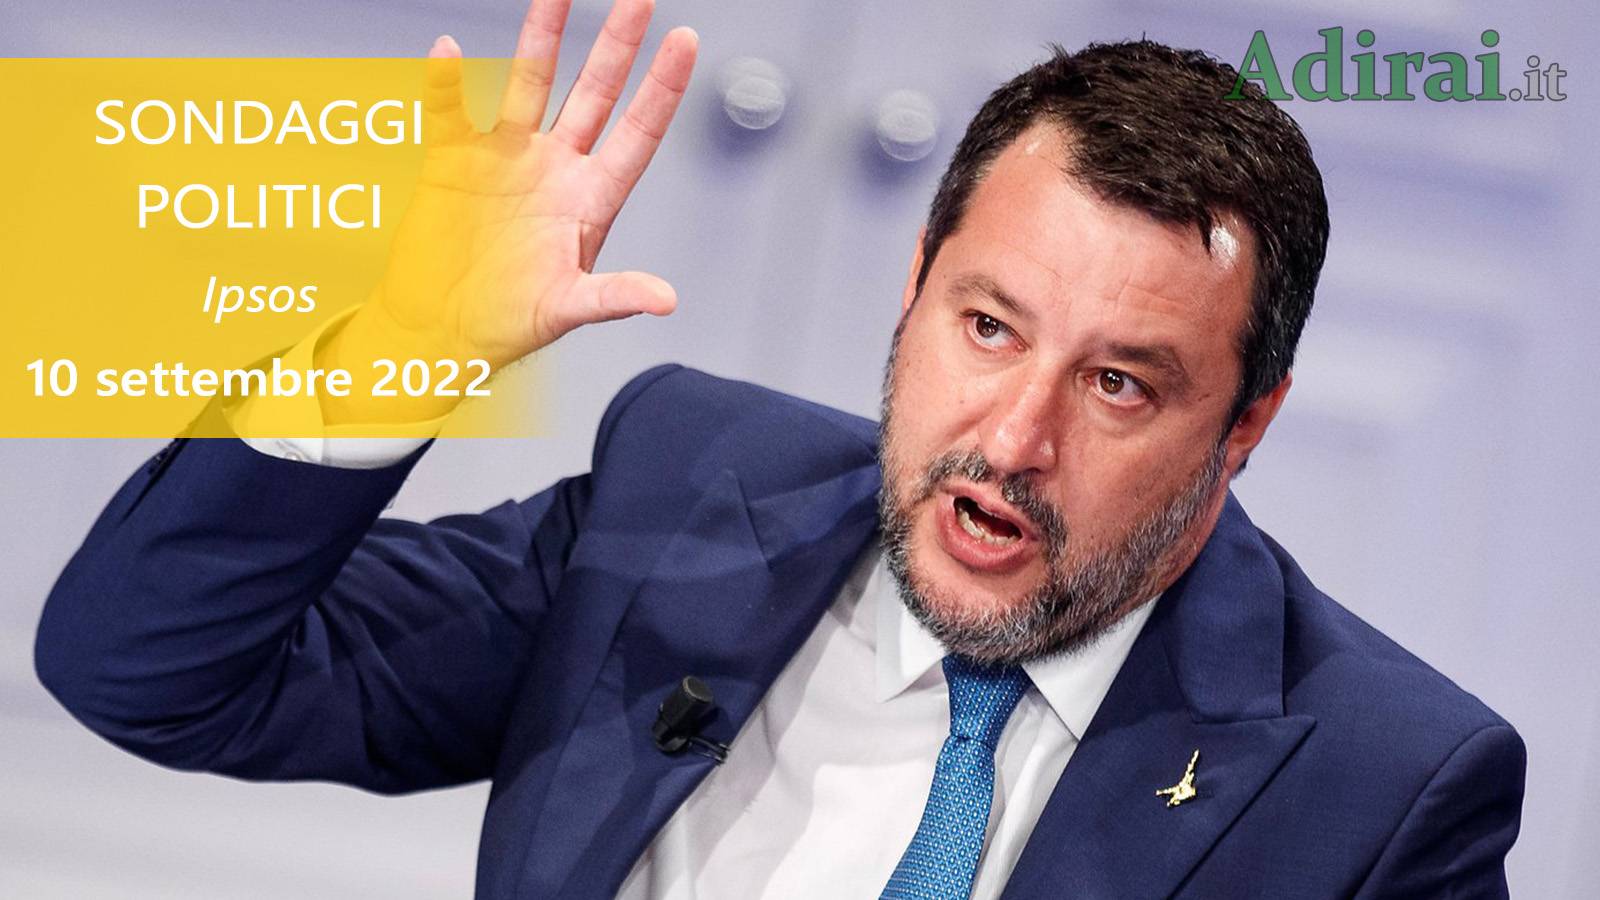 ultimi sondaggi politici 10 settembre 2022 ipsos di tutti i partiti italiani